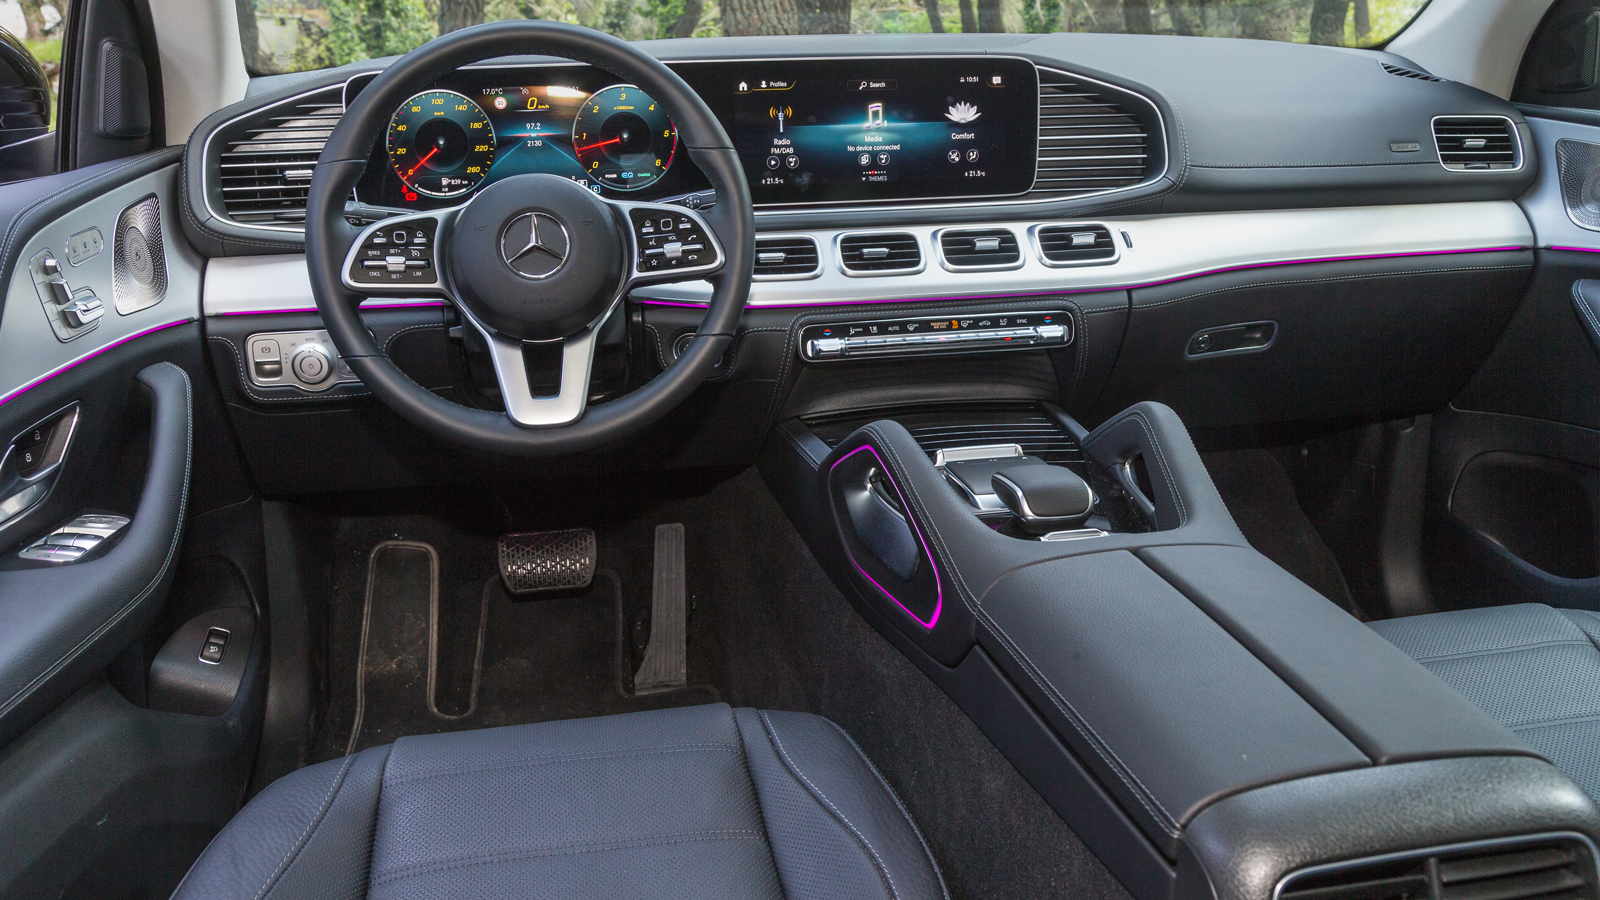 Πολυτέλεια και τεχνολογία σε μεγάλες δόσεις συναντάμε στη καμπίνα της Mercedes GLE 300d 4MATIC Coupe 